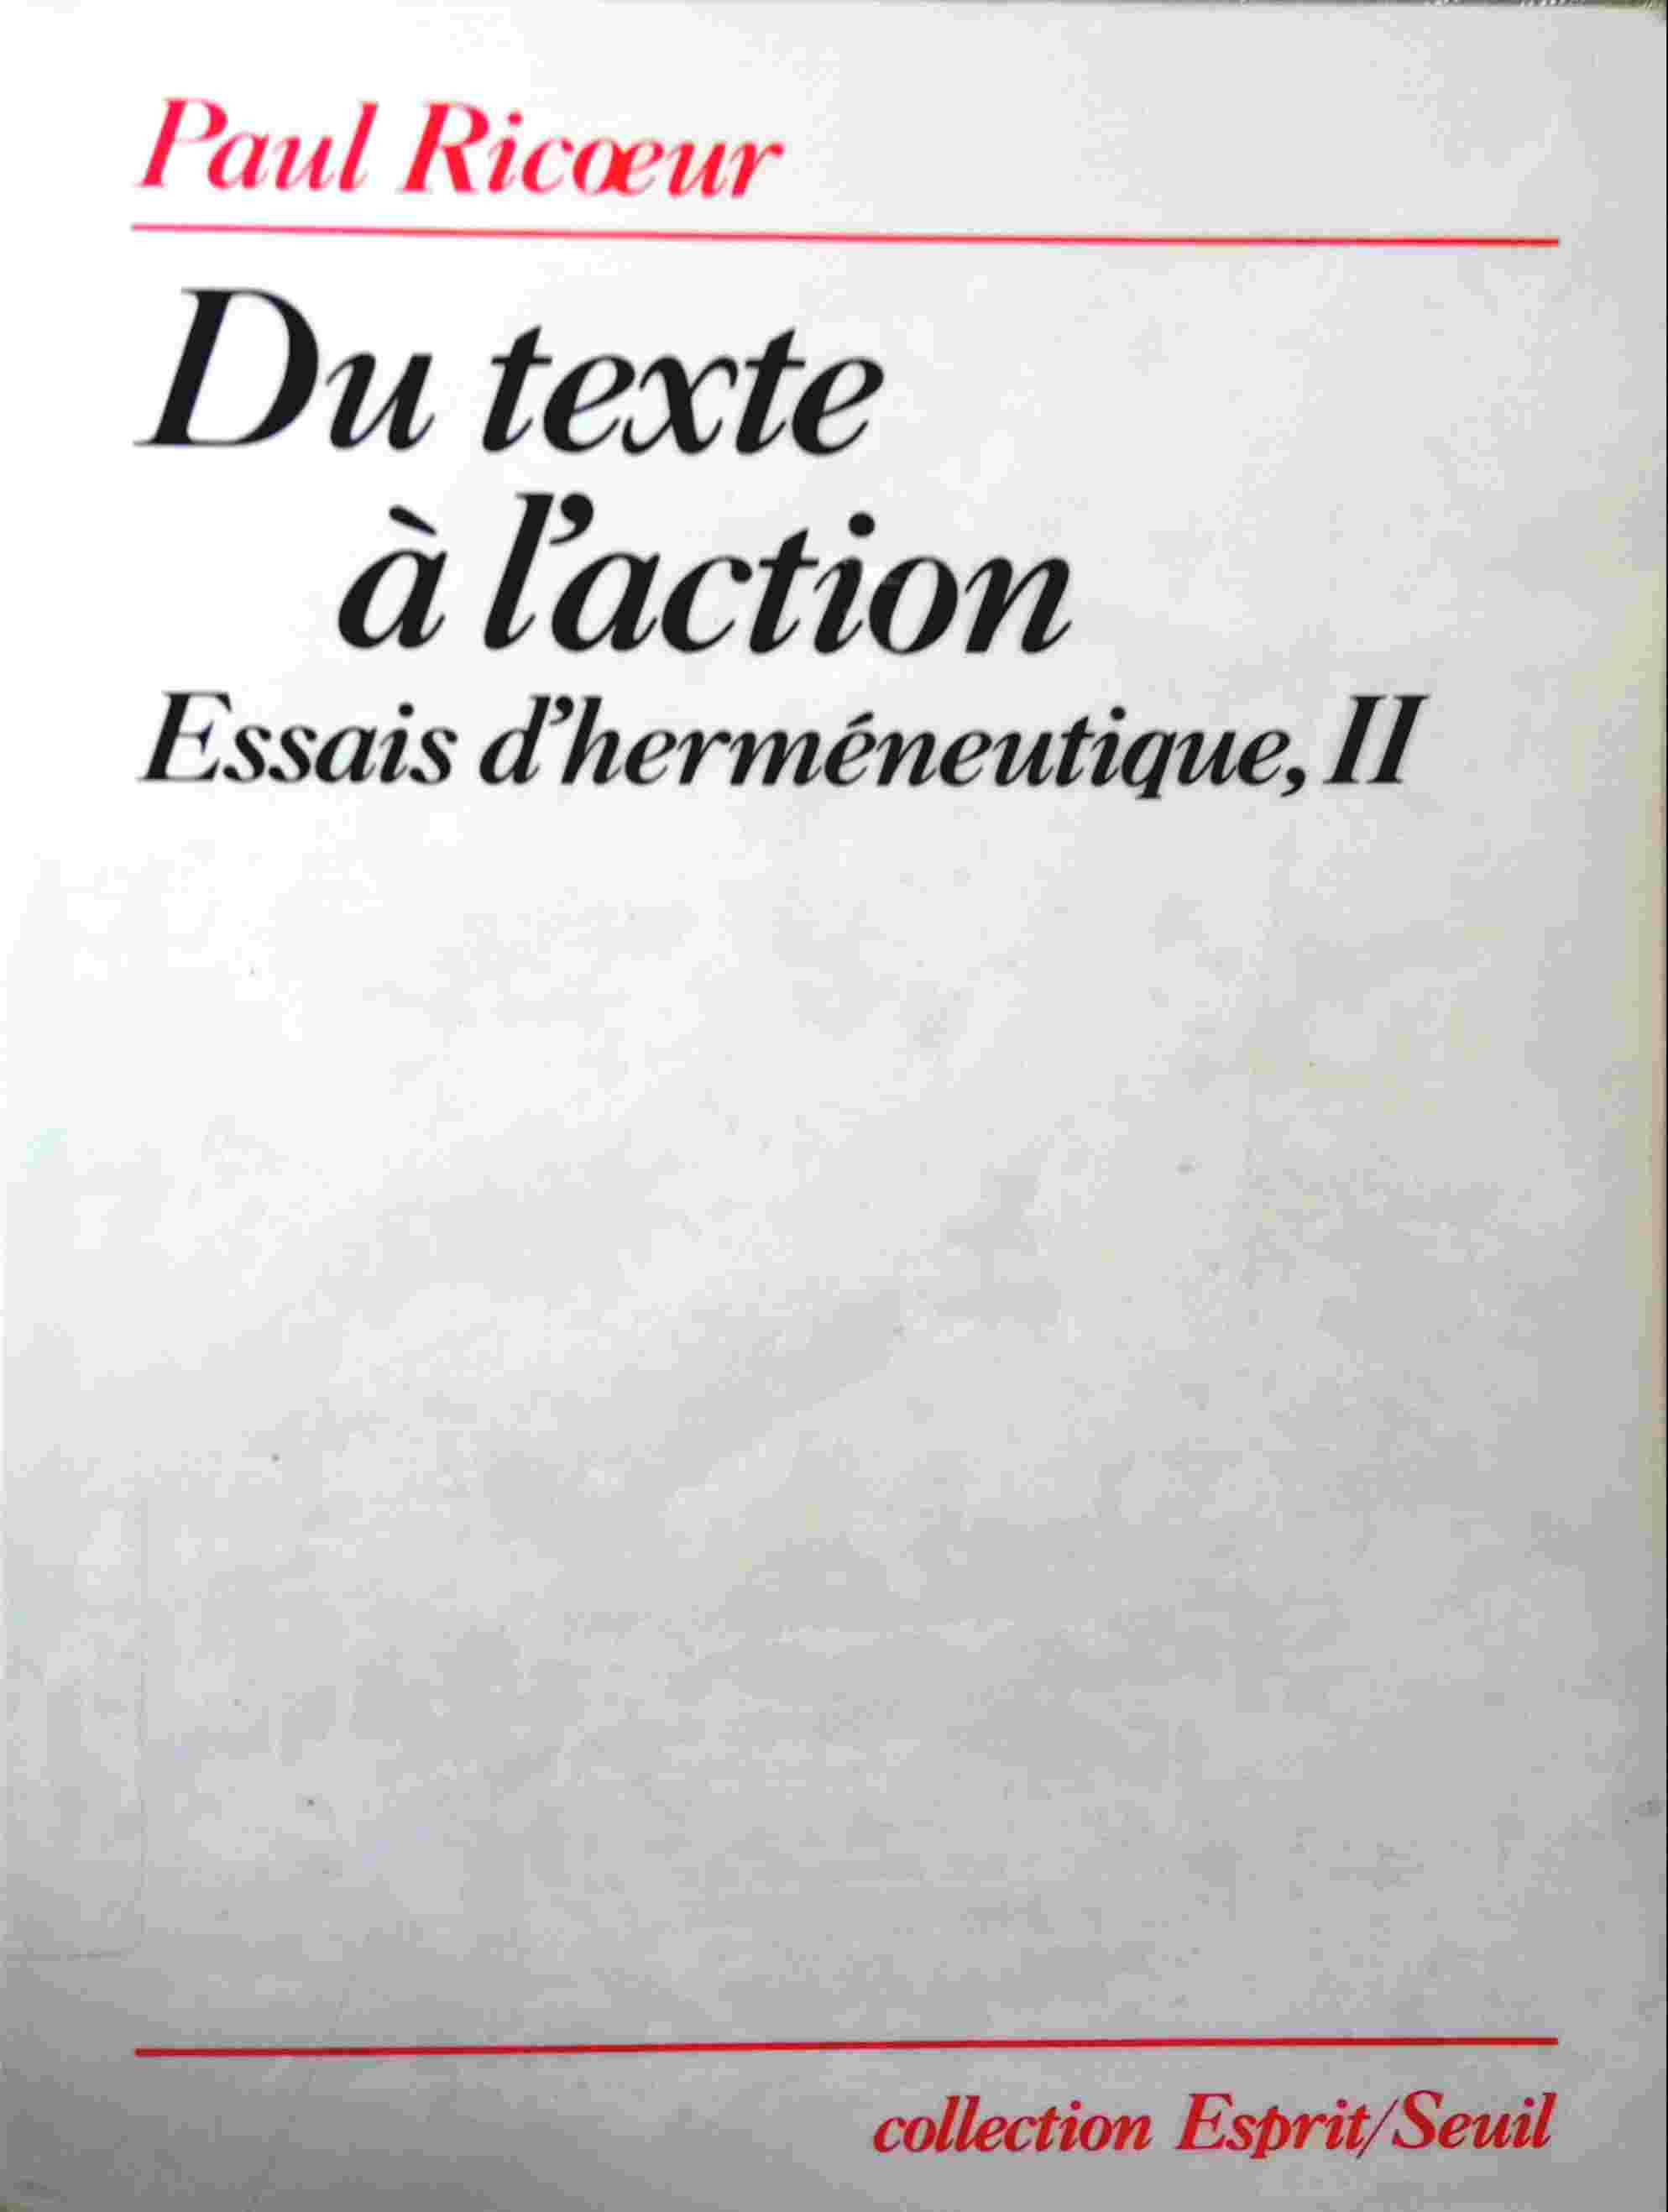 DU TEXTE À L'ACTION: ESSAIS D'HERMÉNEUTIQUE II